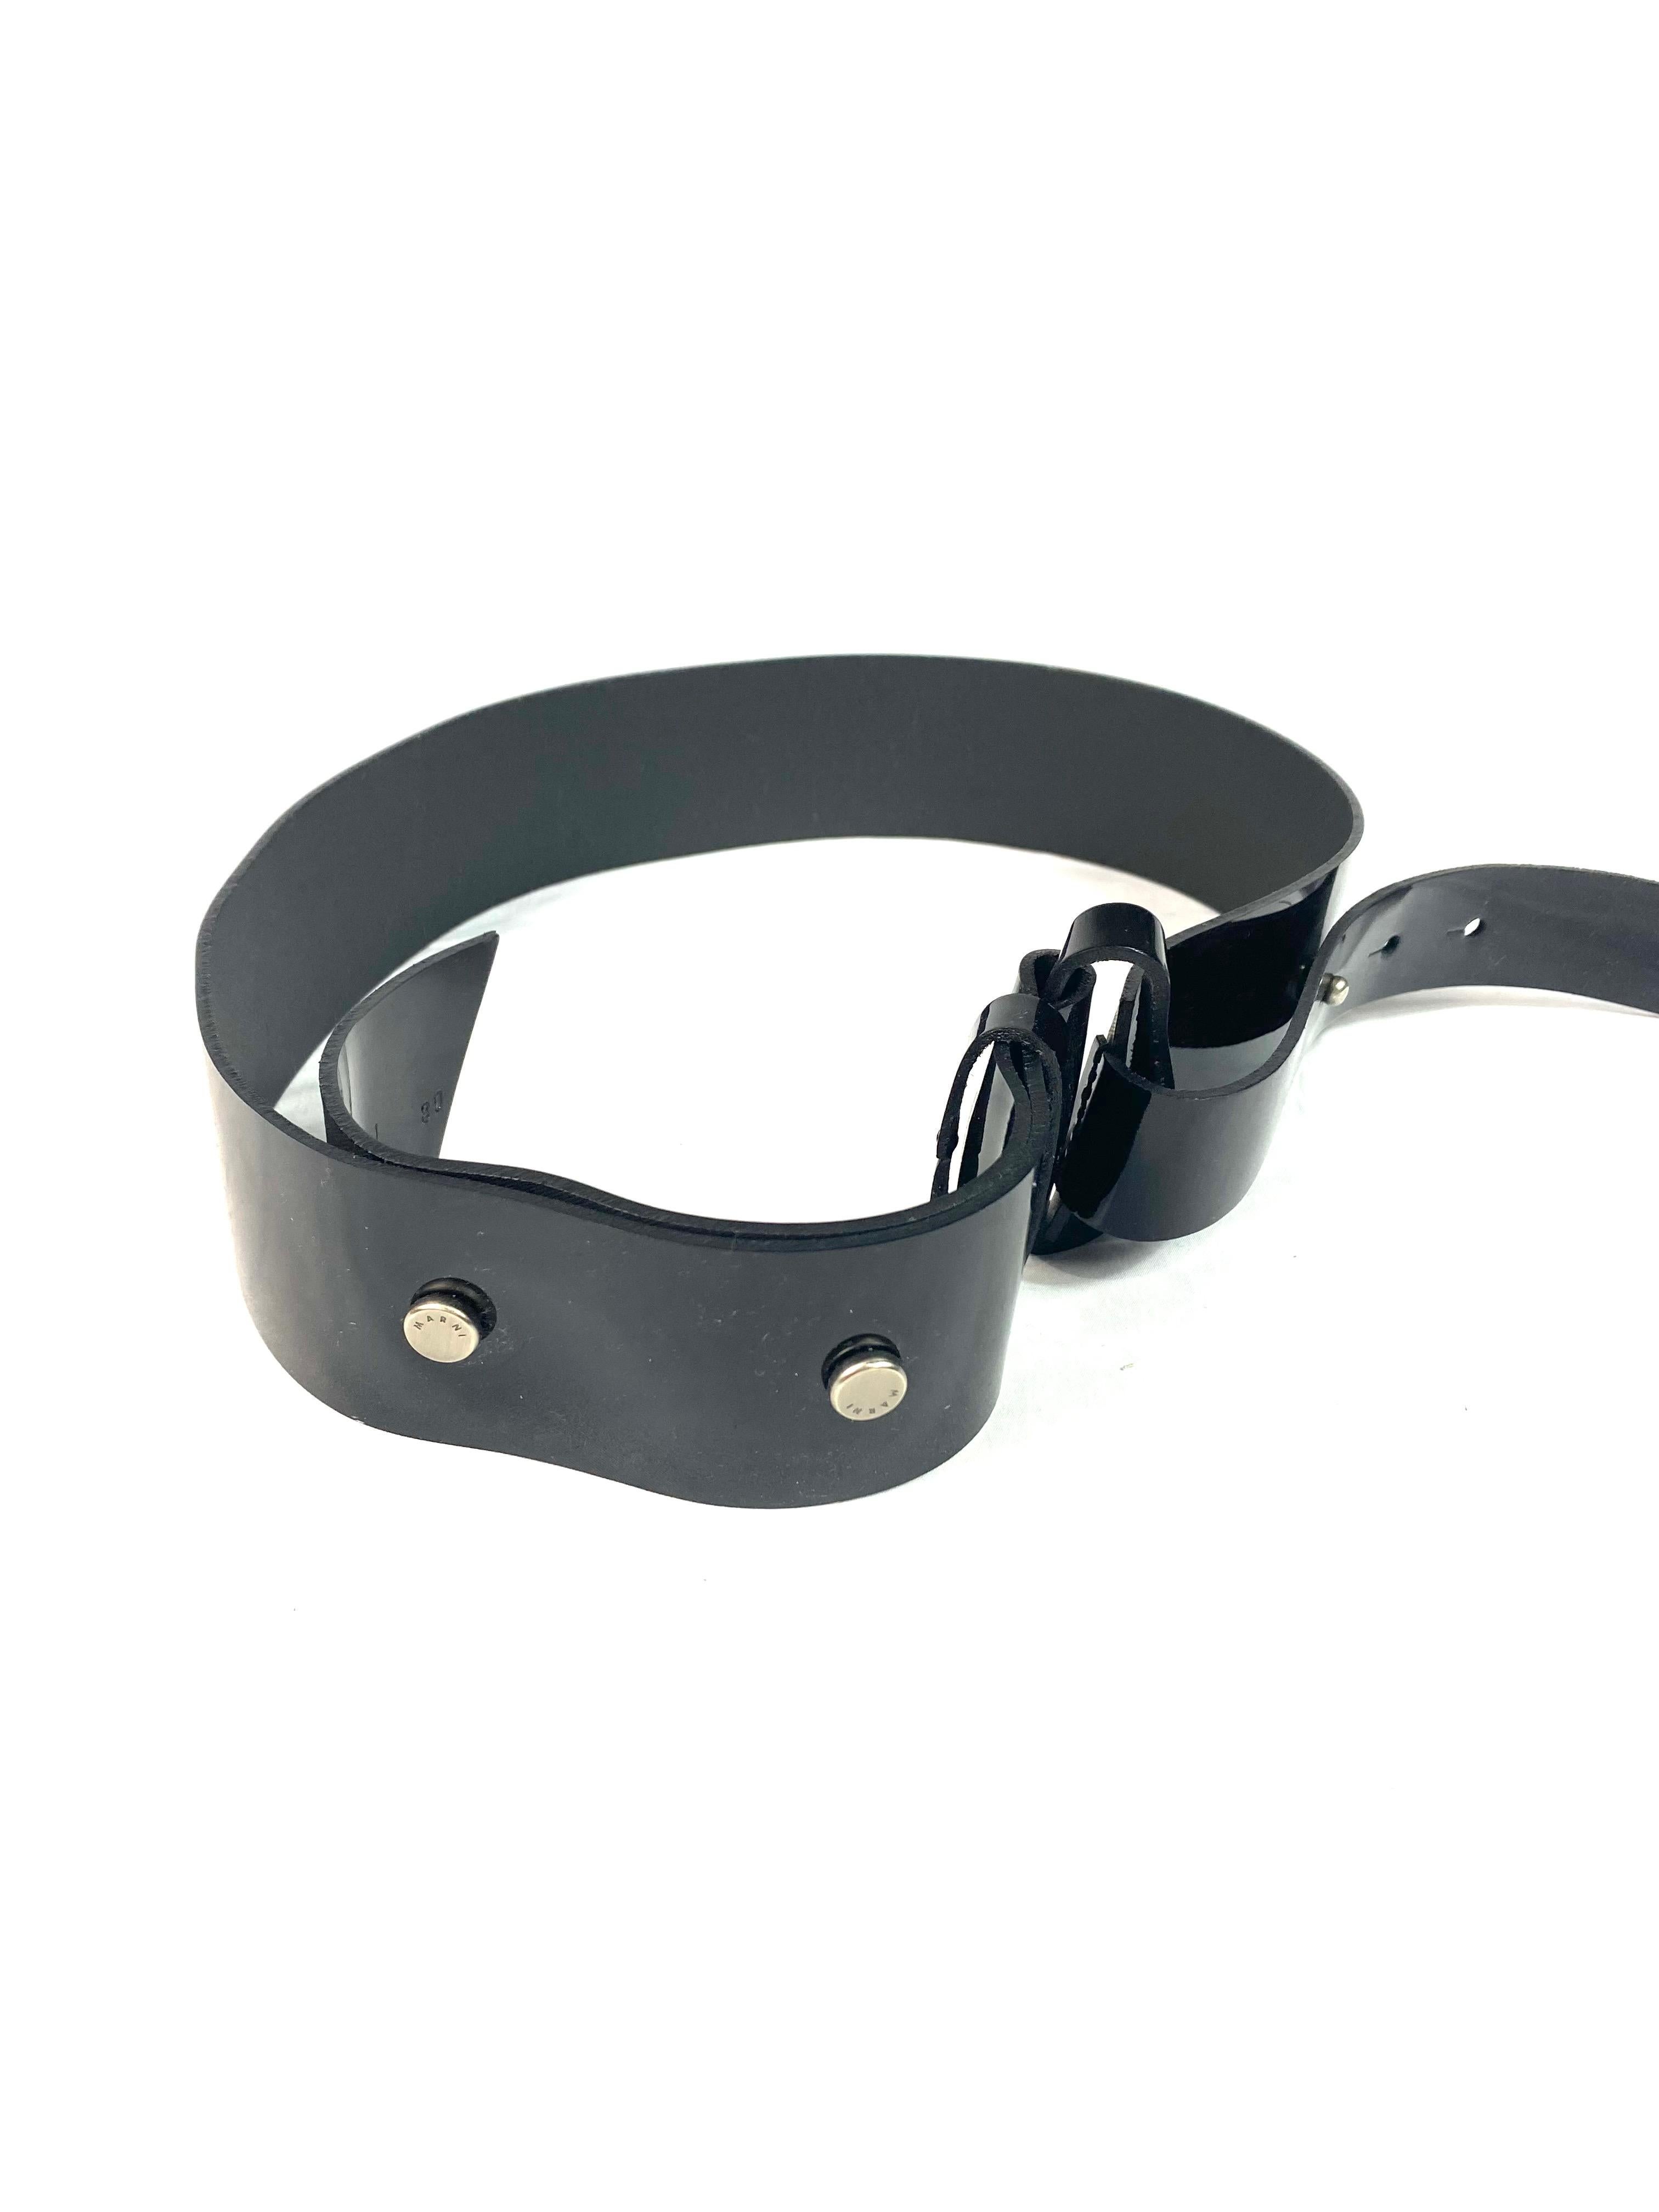 Détails du produit :

La ceinture est dotée d'une finition brillante, d'un matériel de couleur argentée et d'un design large.